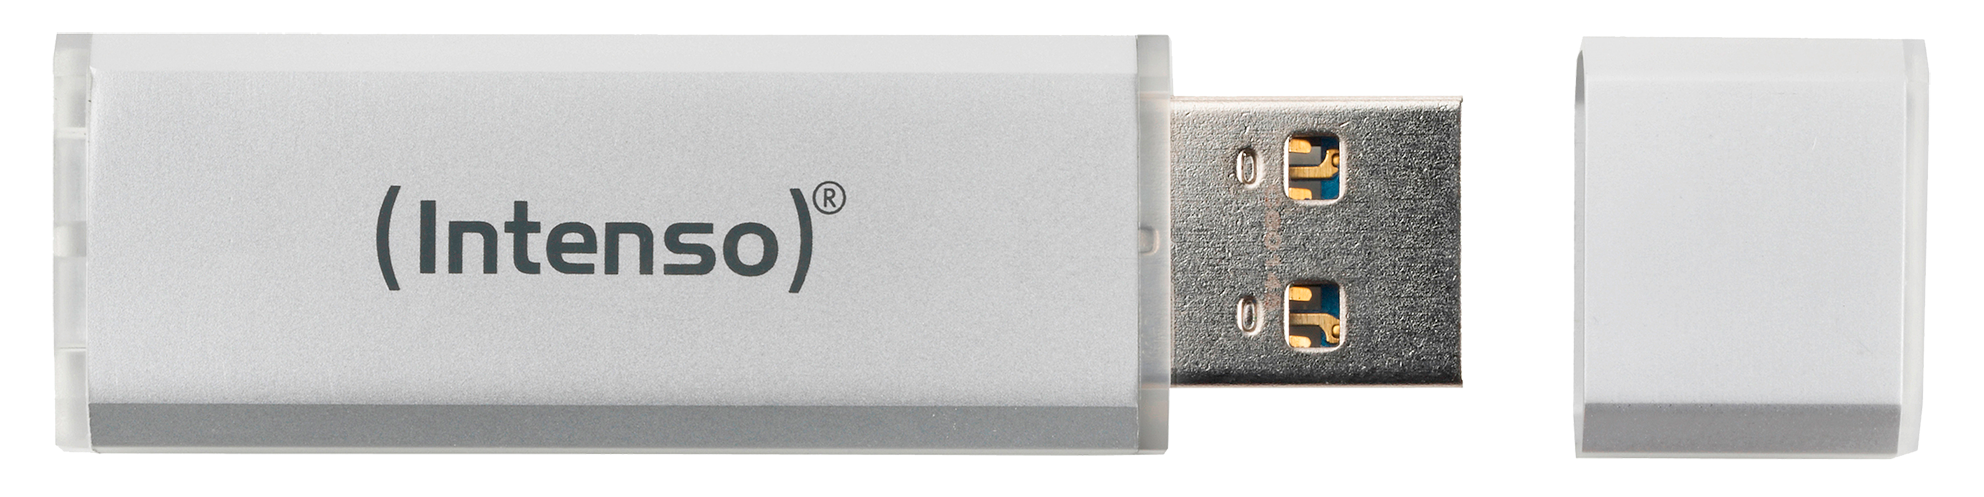 Line 35 MB/s, Silber USB-Stick, 128 INTENSO GB, Ultra